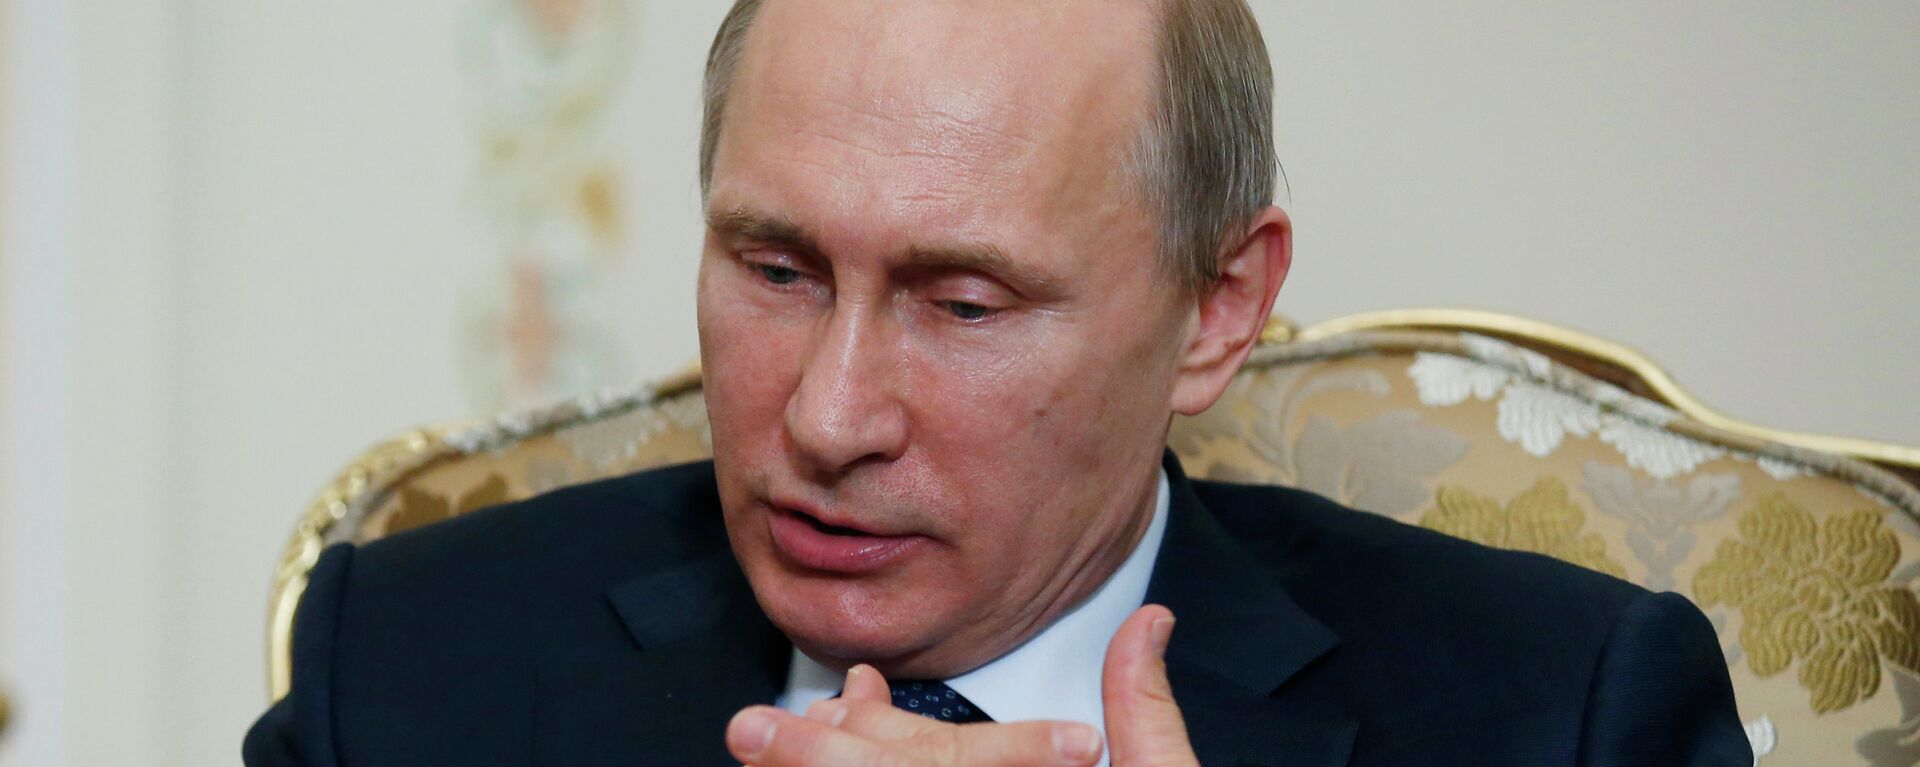 Руски председник Владимир Путин - Sputnik Србија, 1920, 30.04.2015